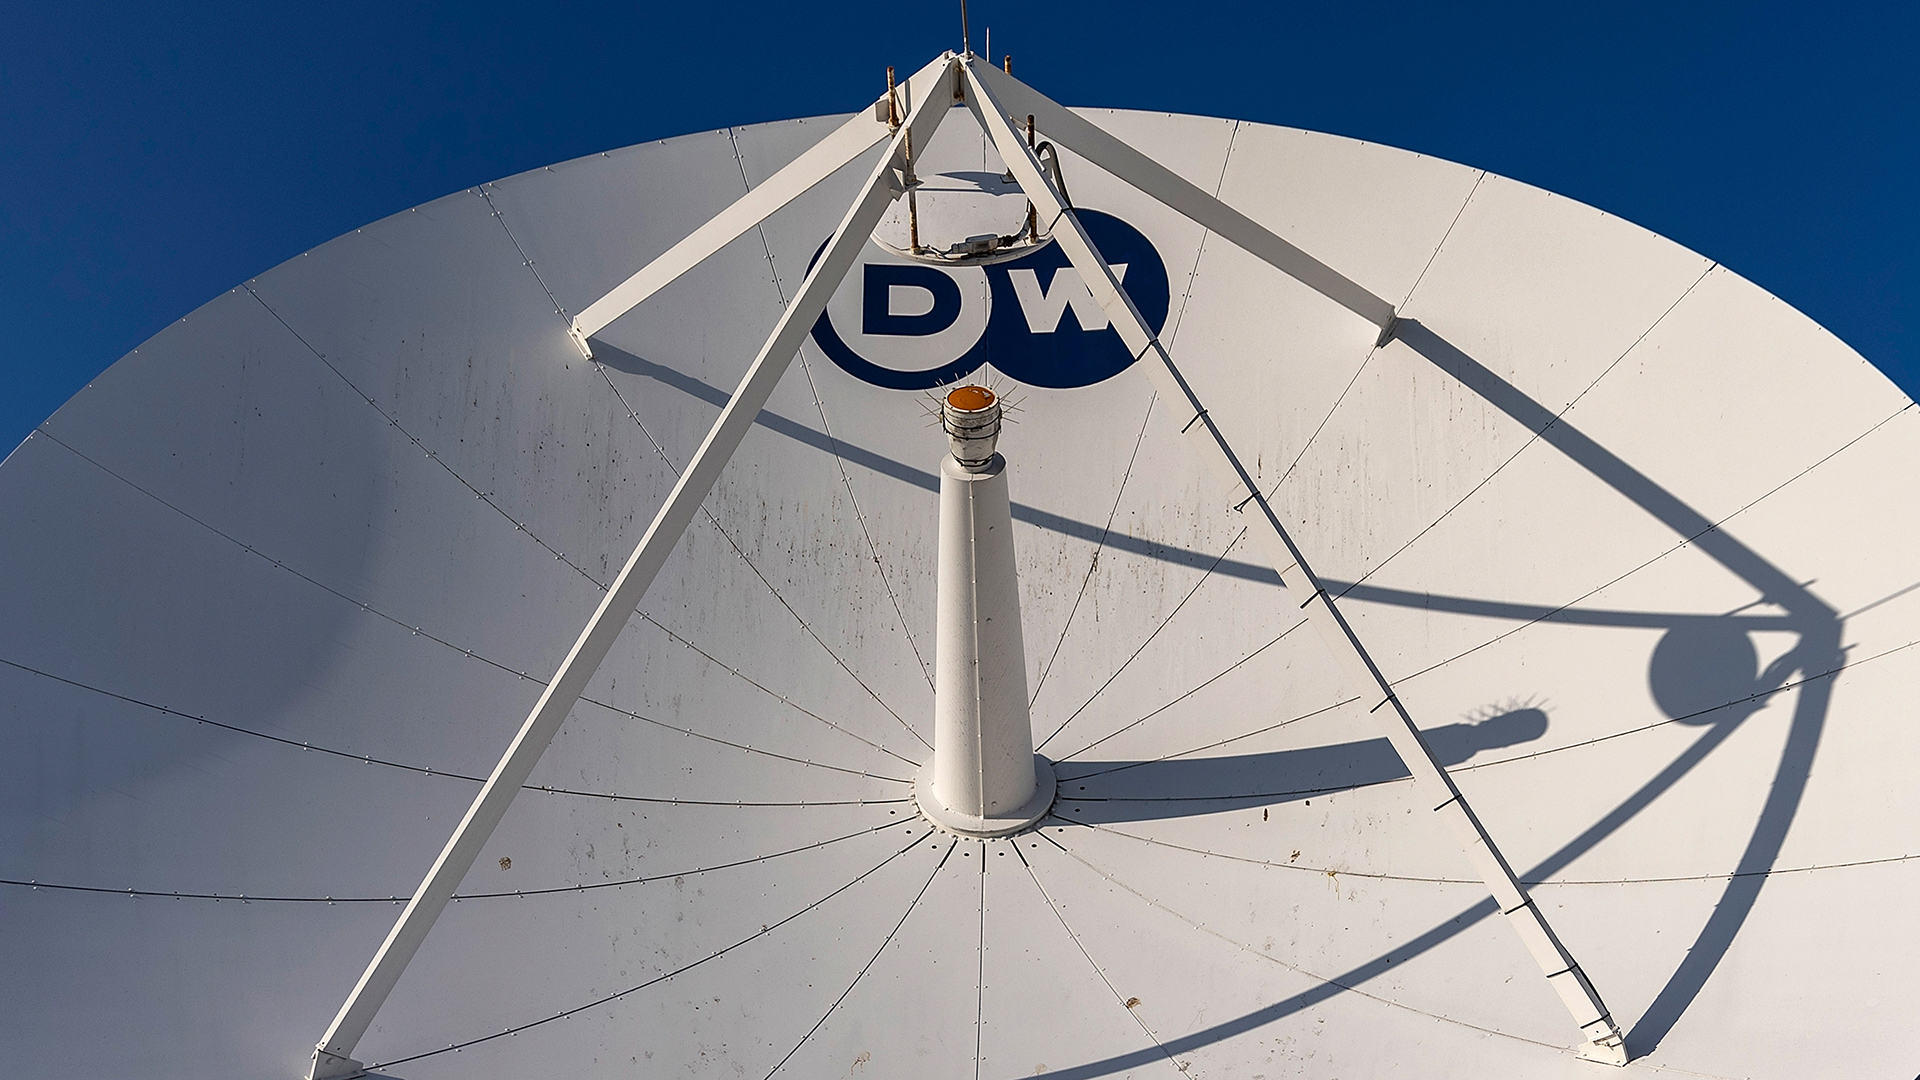 Satellitenschüsseln mit der Aufschrift DW (Deutschen Welle) | dpa